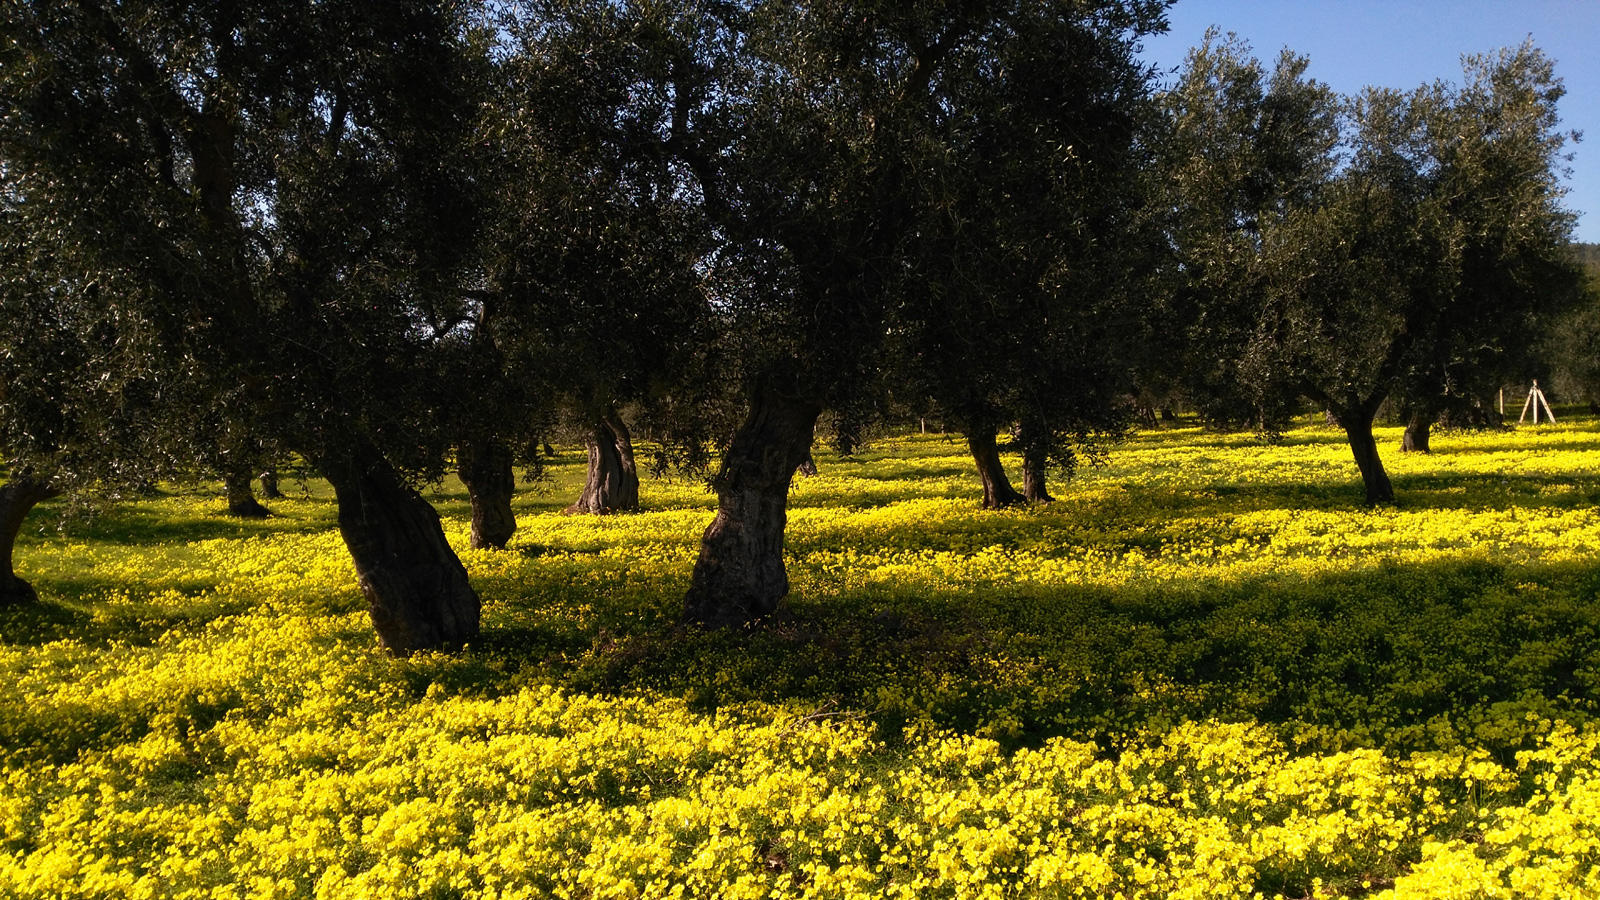 Primavera a Vieste tra ulivi e acetosella gialla